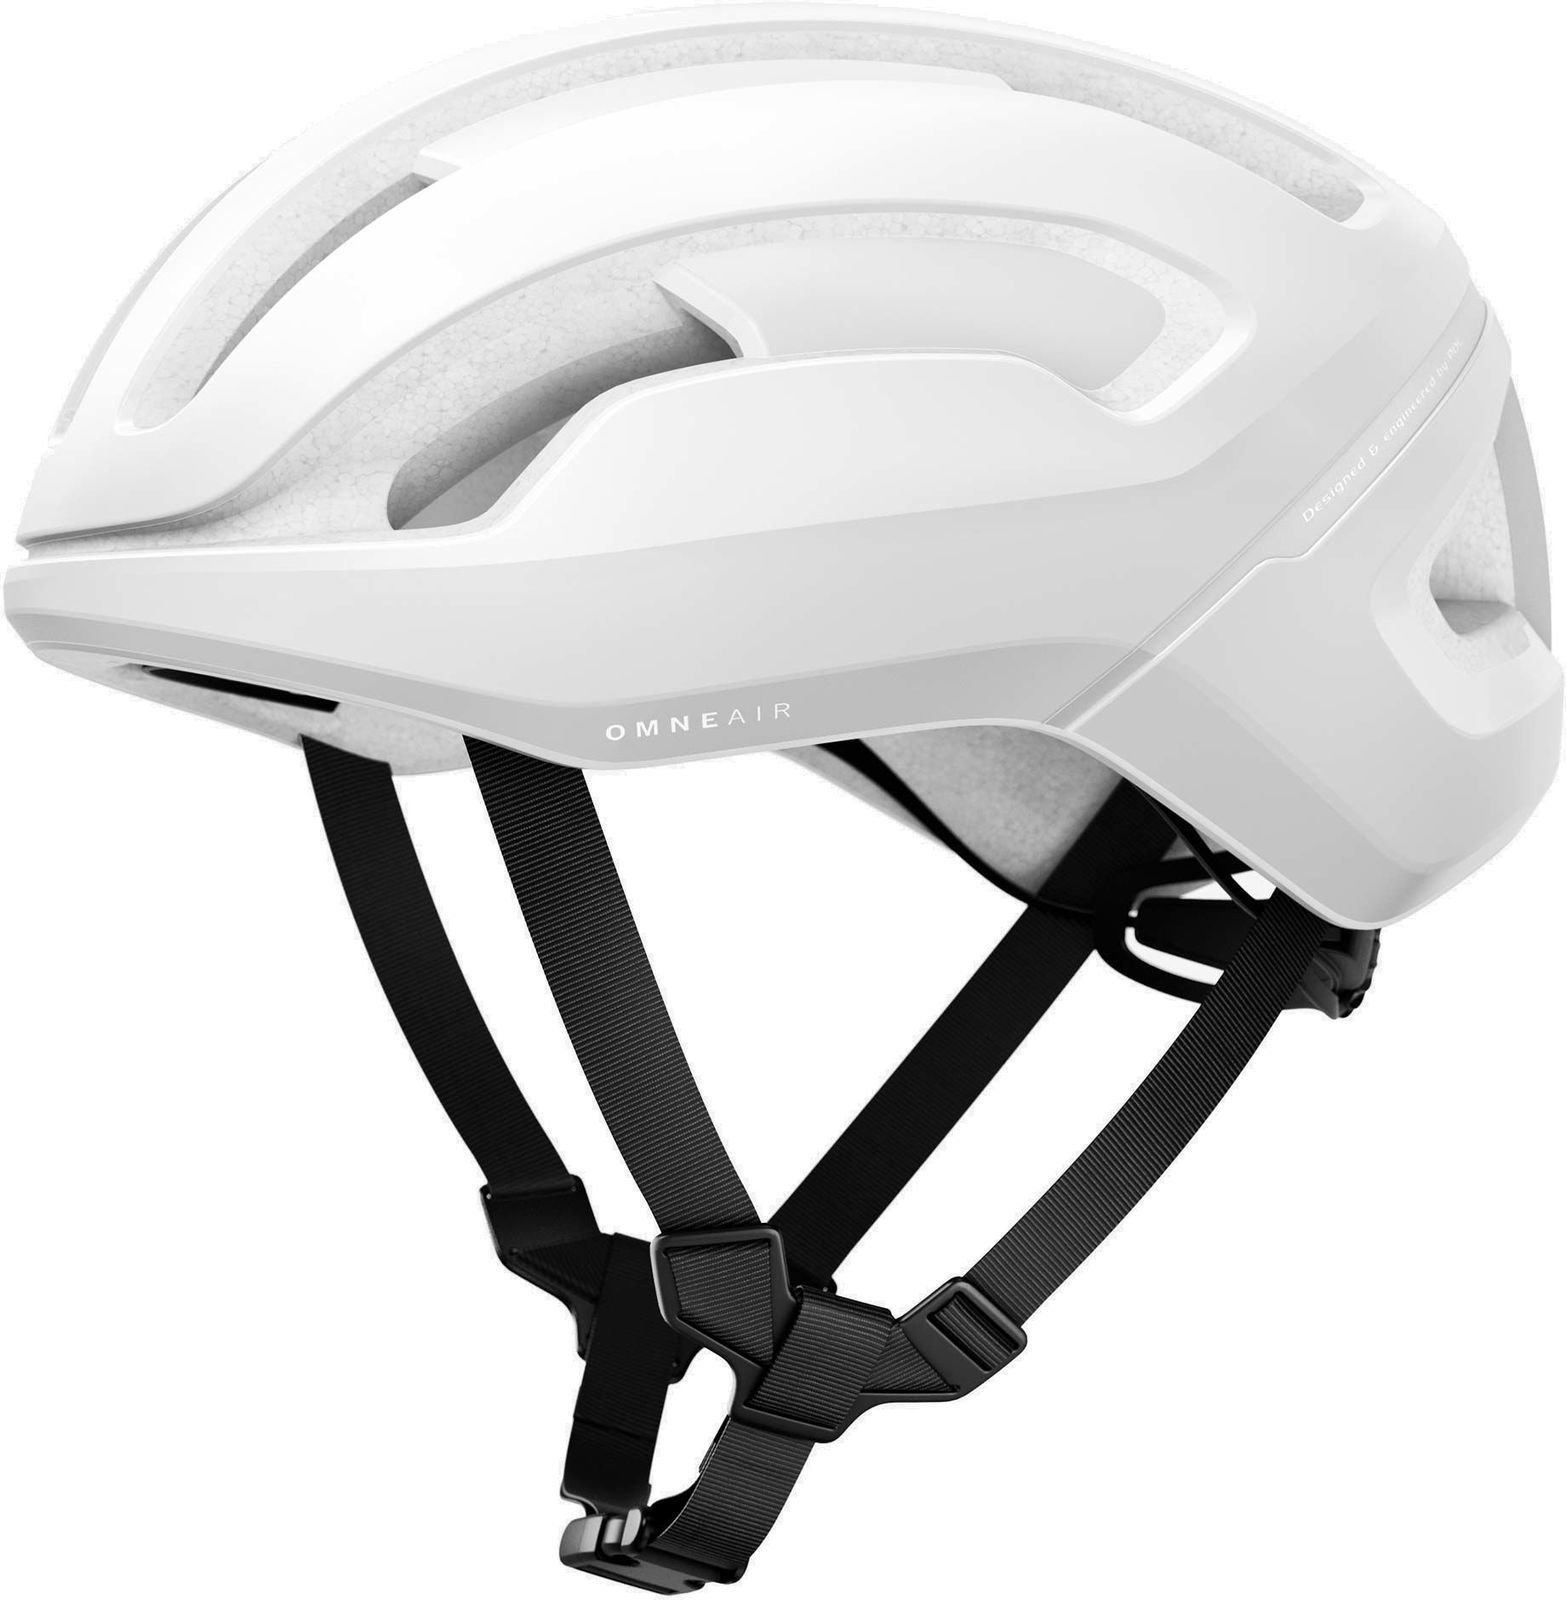 Bike Helmet POC Omne AIR SPIN Hydrogen White Matt 50-56 cm Bike Helmet